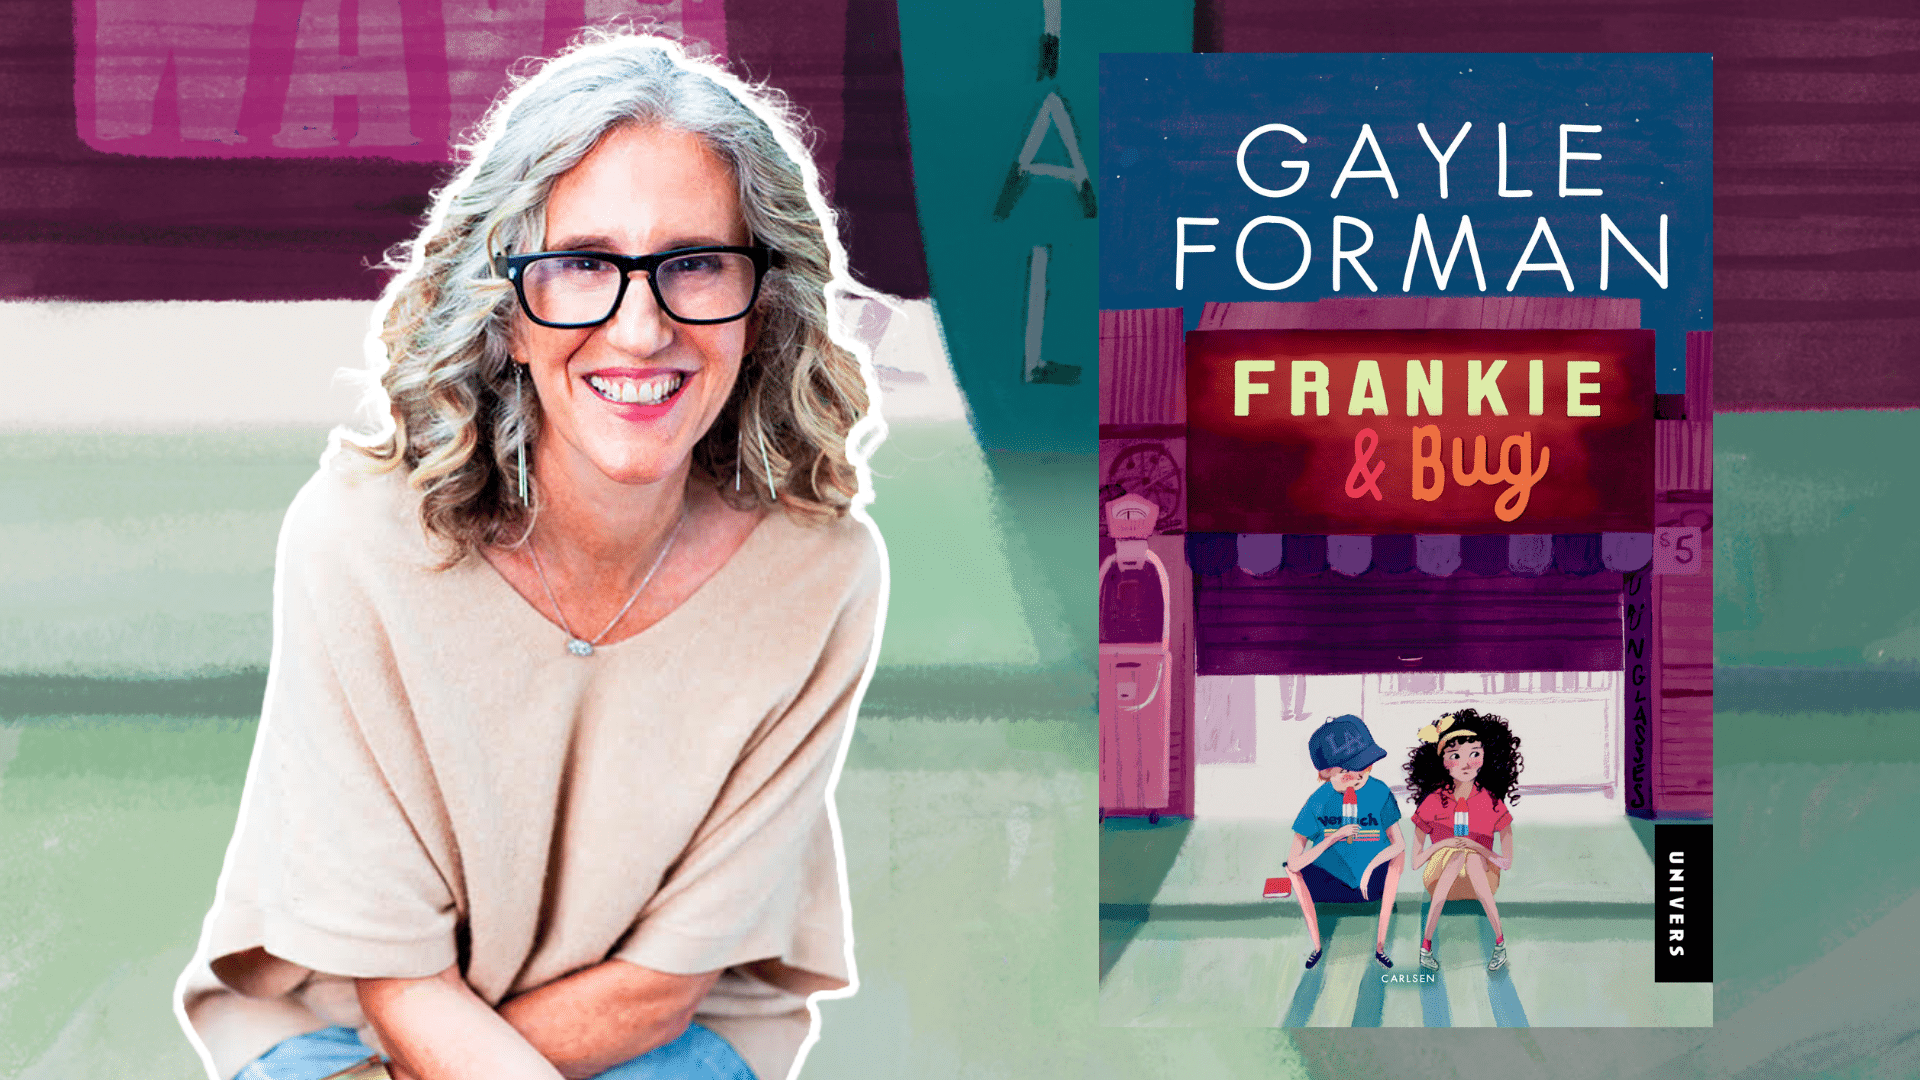 Gayle Forman, ya, young adult, ungdomsbog, ungdomsbøger, ungdomslitteratur, frankie og bug, frankie & bug